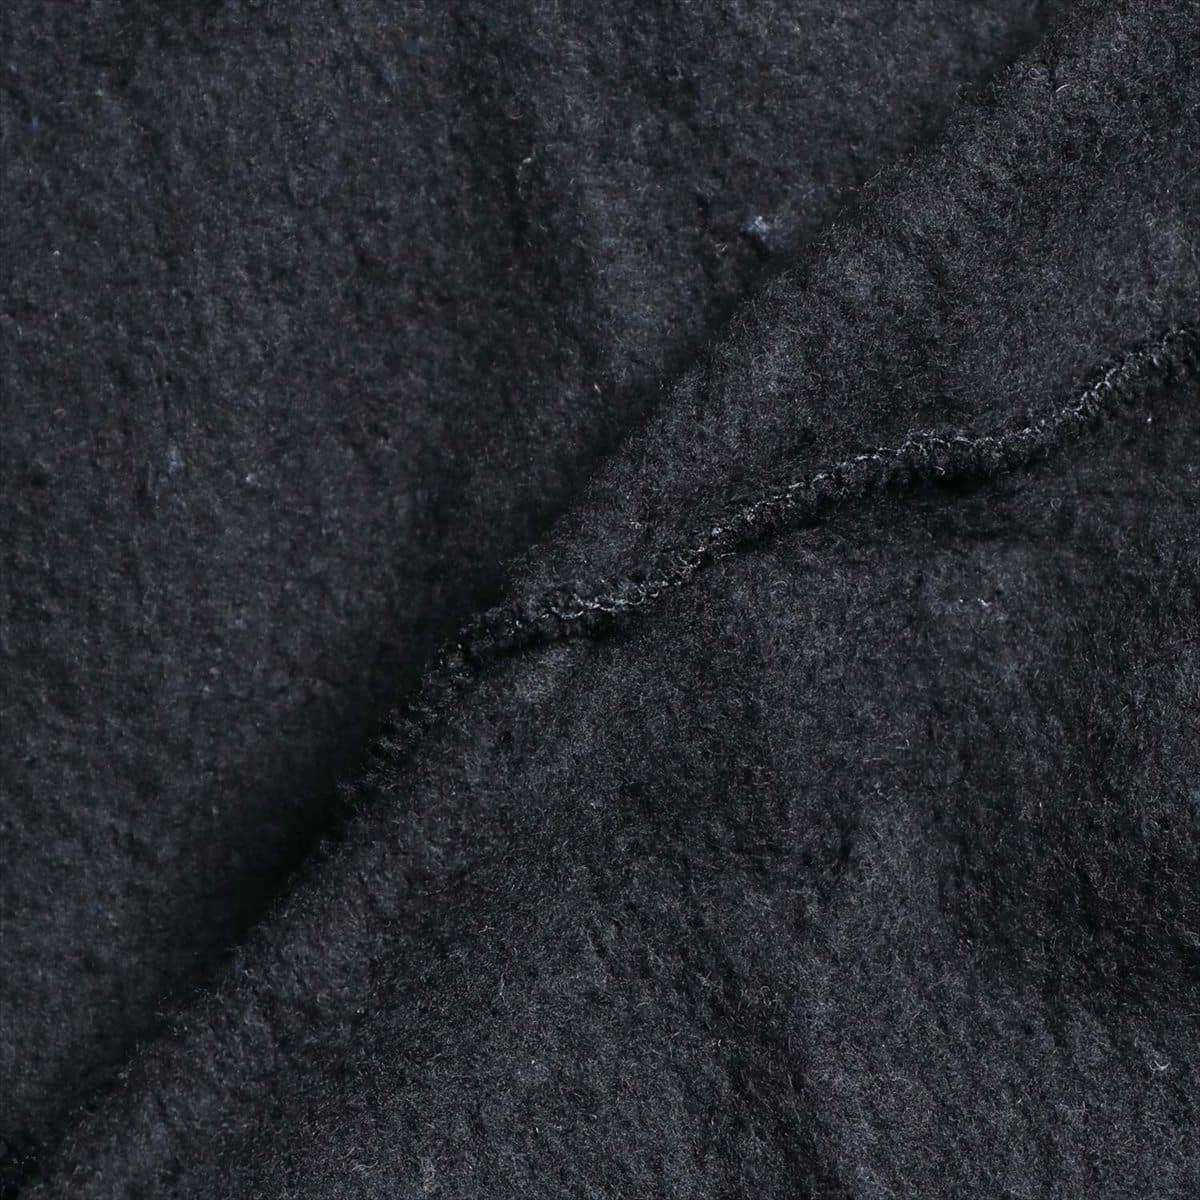 D&G ニット セーター XS メンズ ブラック ドルチェ&ガッバーナ